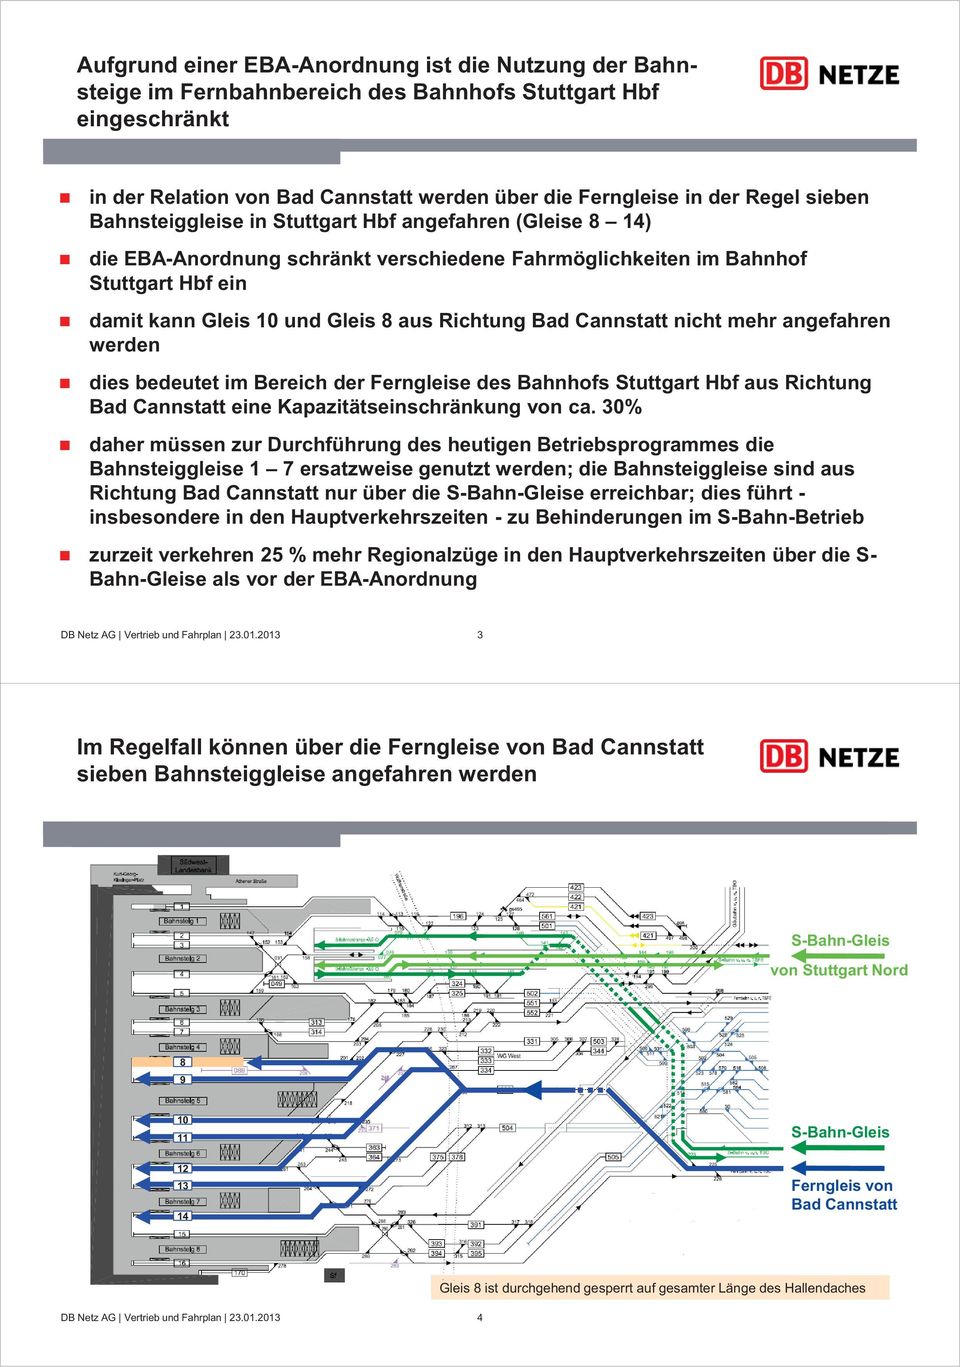 Cannstatt nicht mehr angefahren werden dies bedeutet im Bereich der Ferngleise des Bahnhofs Stuttgart Hbf aus Richtung Bad Cannstatt eine Kapazitätseinschränkung von ca.